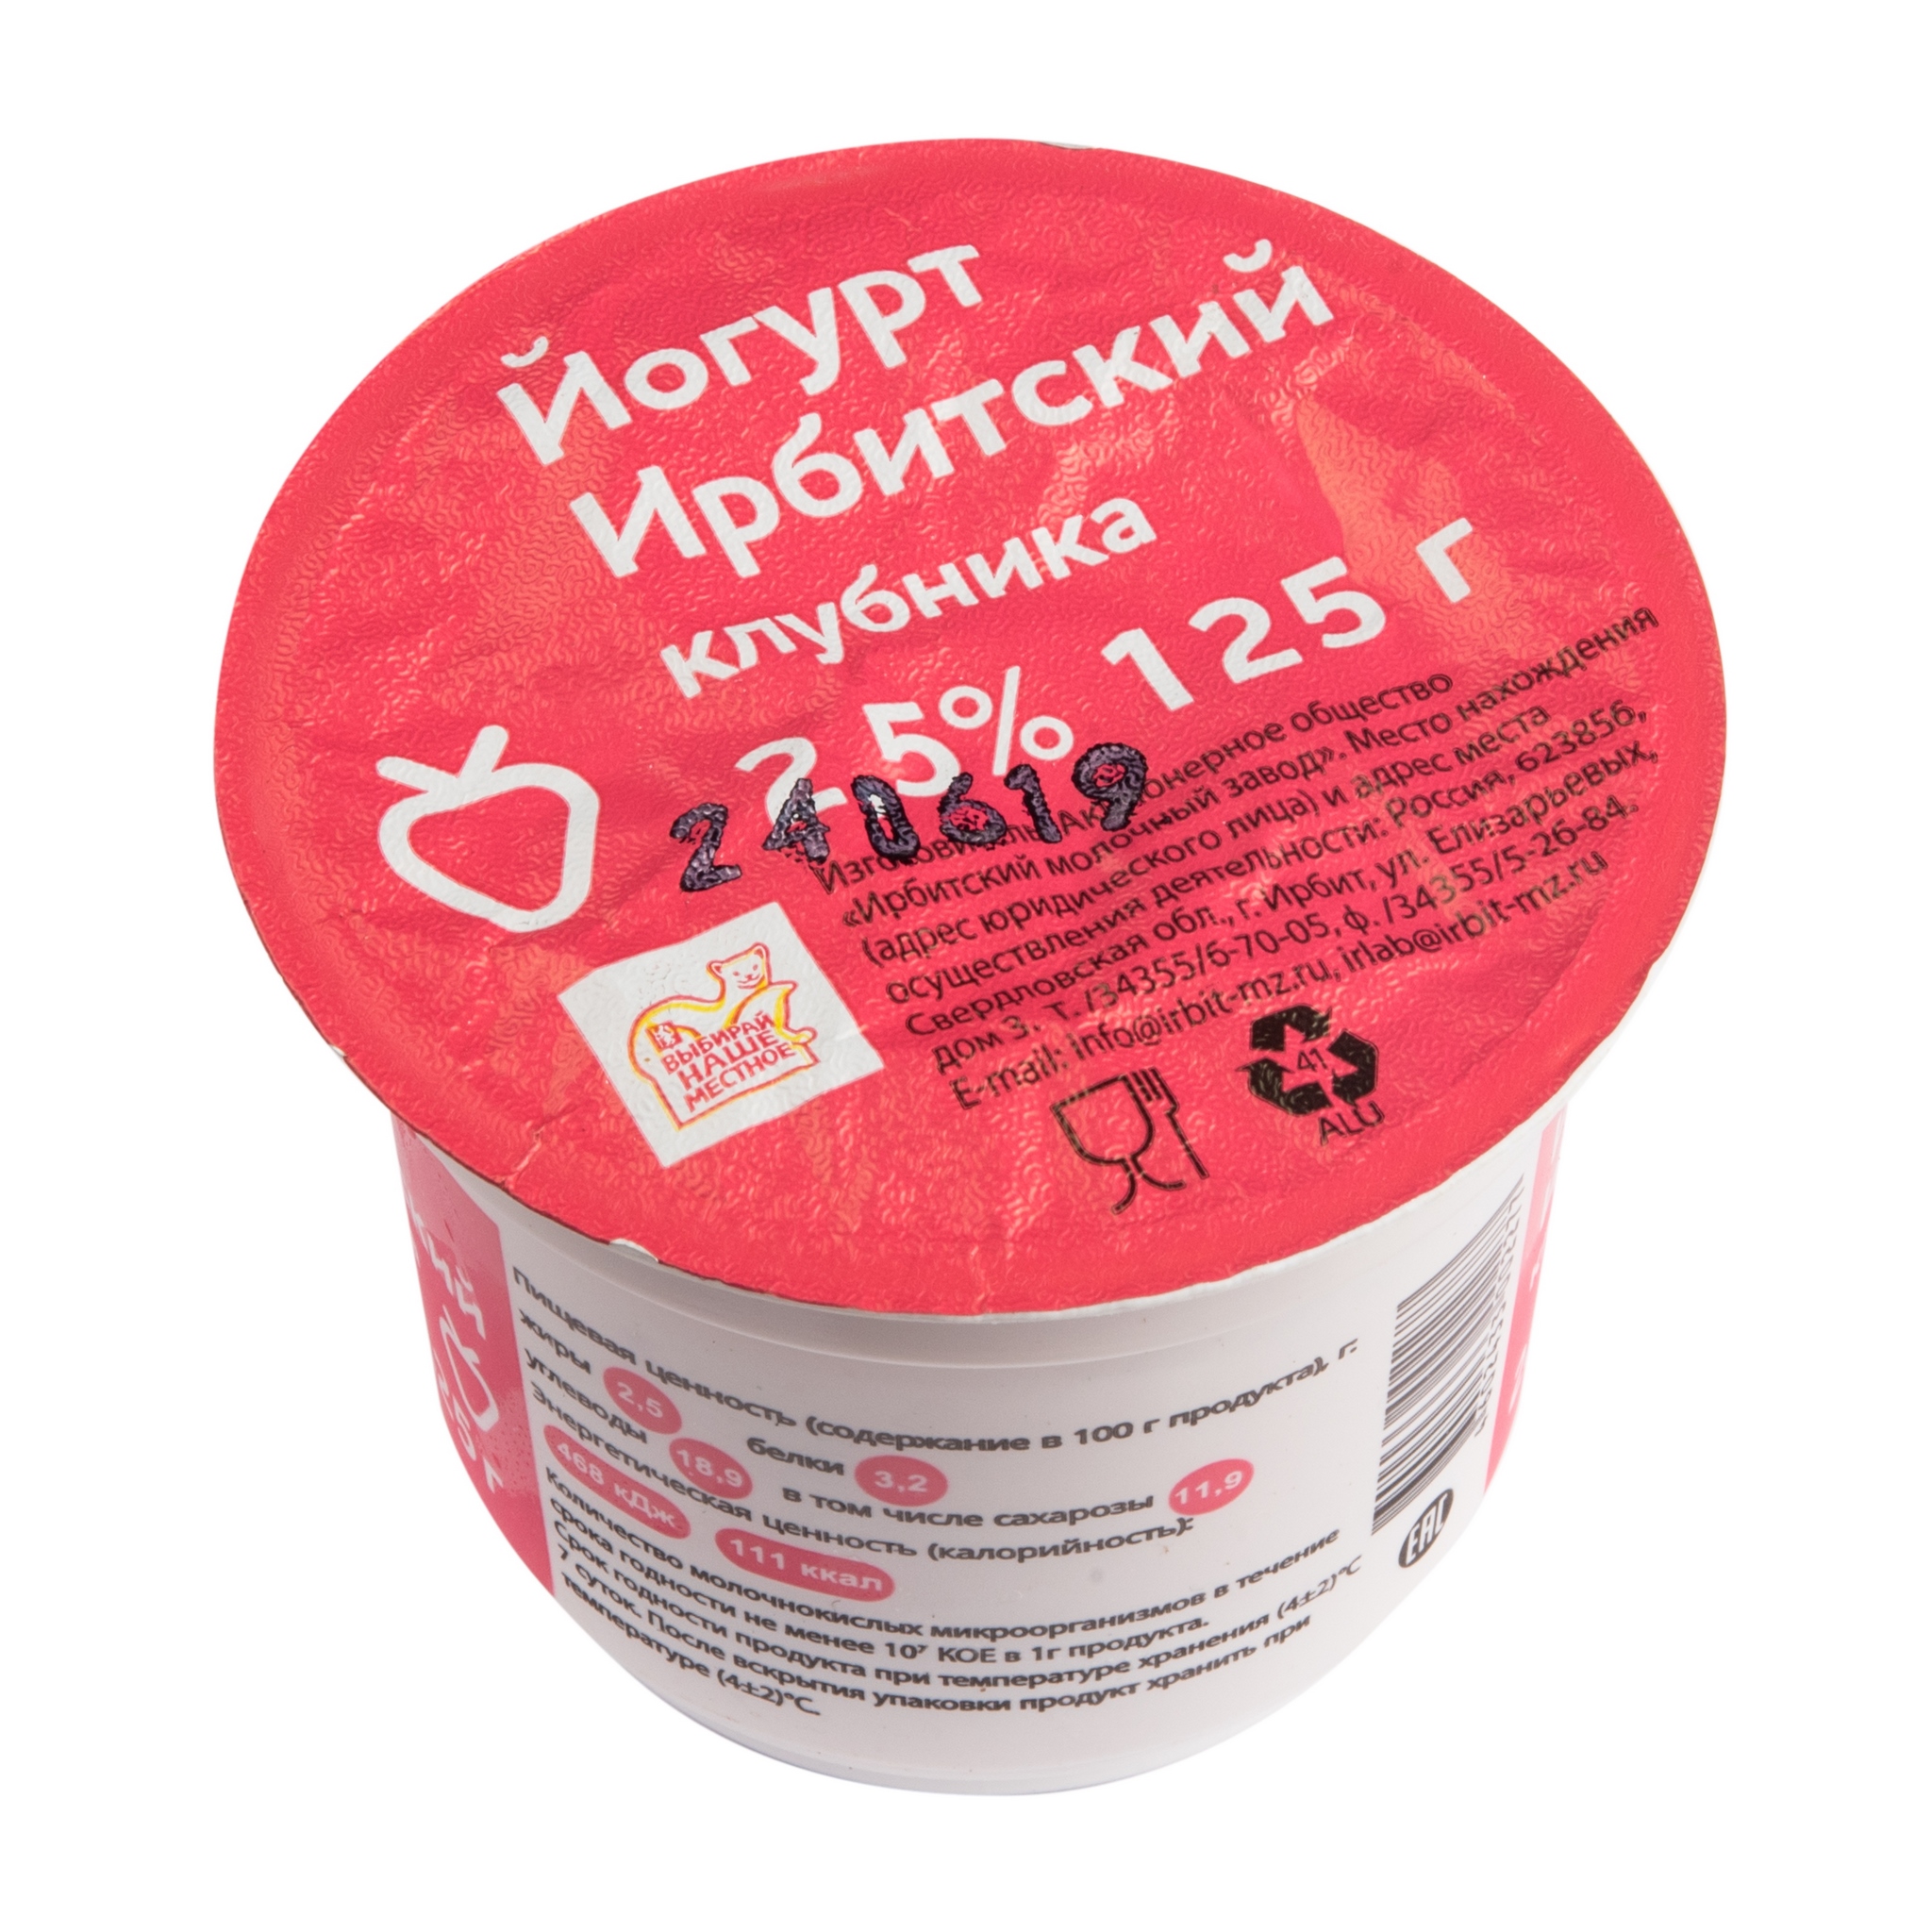 Клубничный йогурт Ирбитский - рейтинг 2,57 по отзывам экспертов ☑Экспертиза состава и производителя